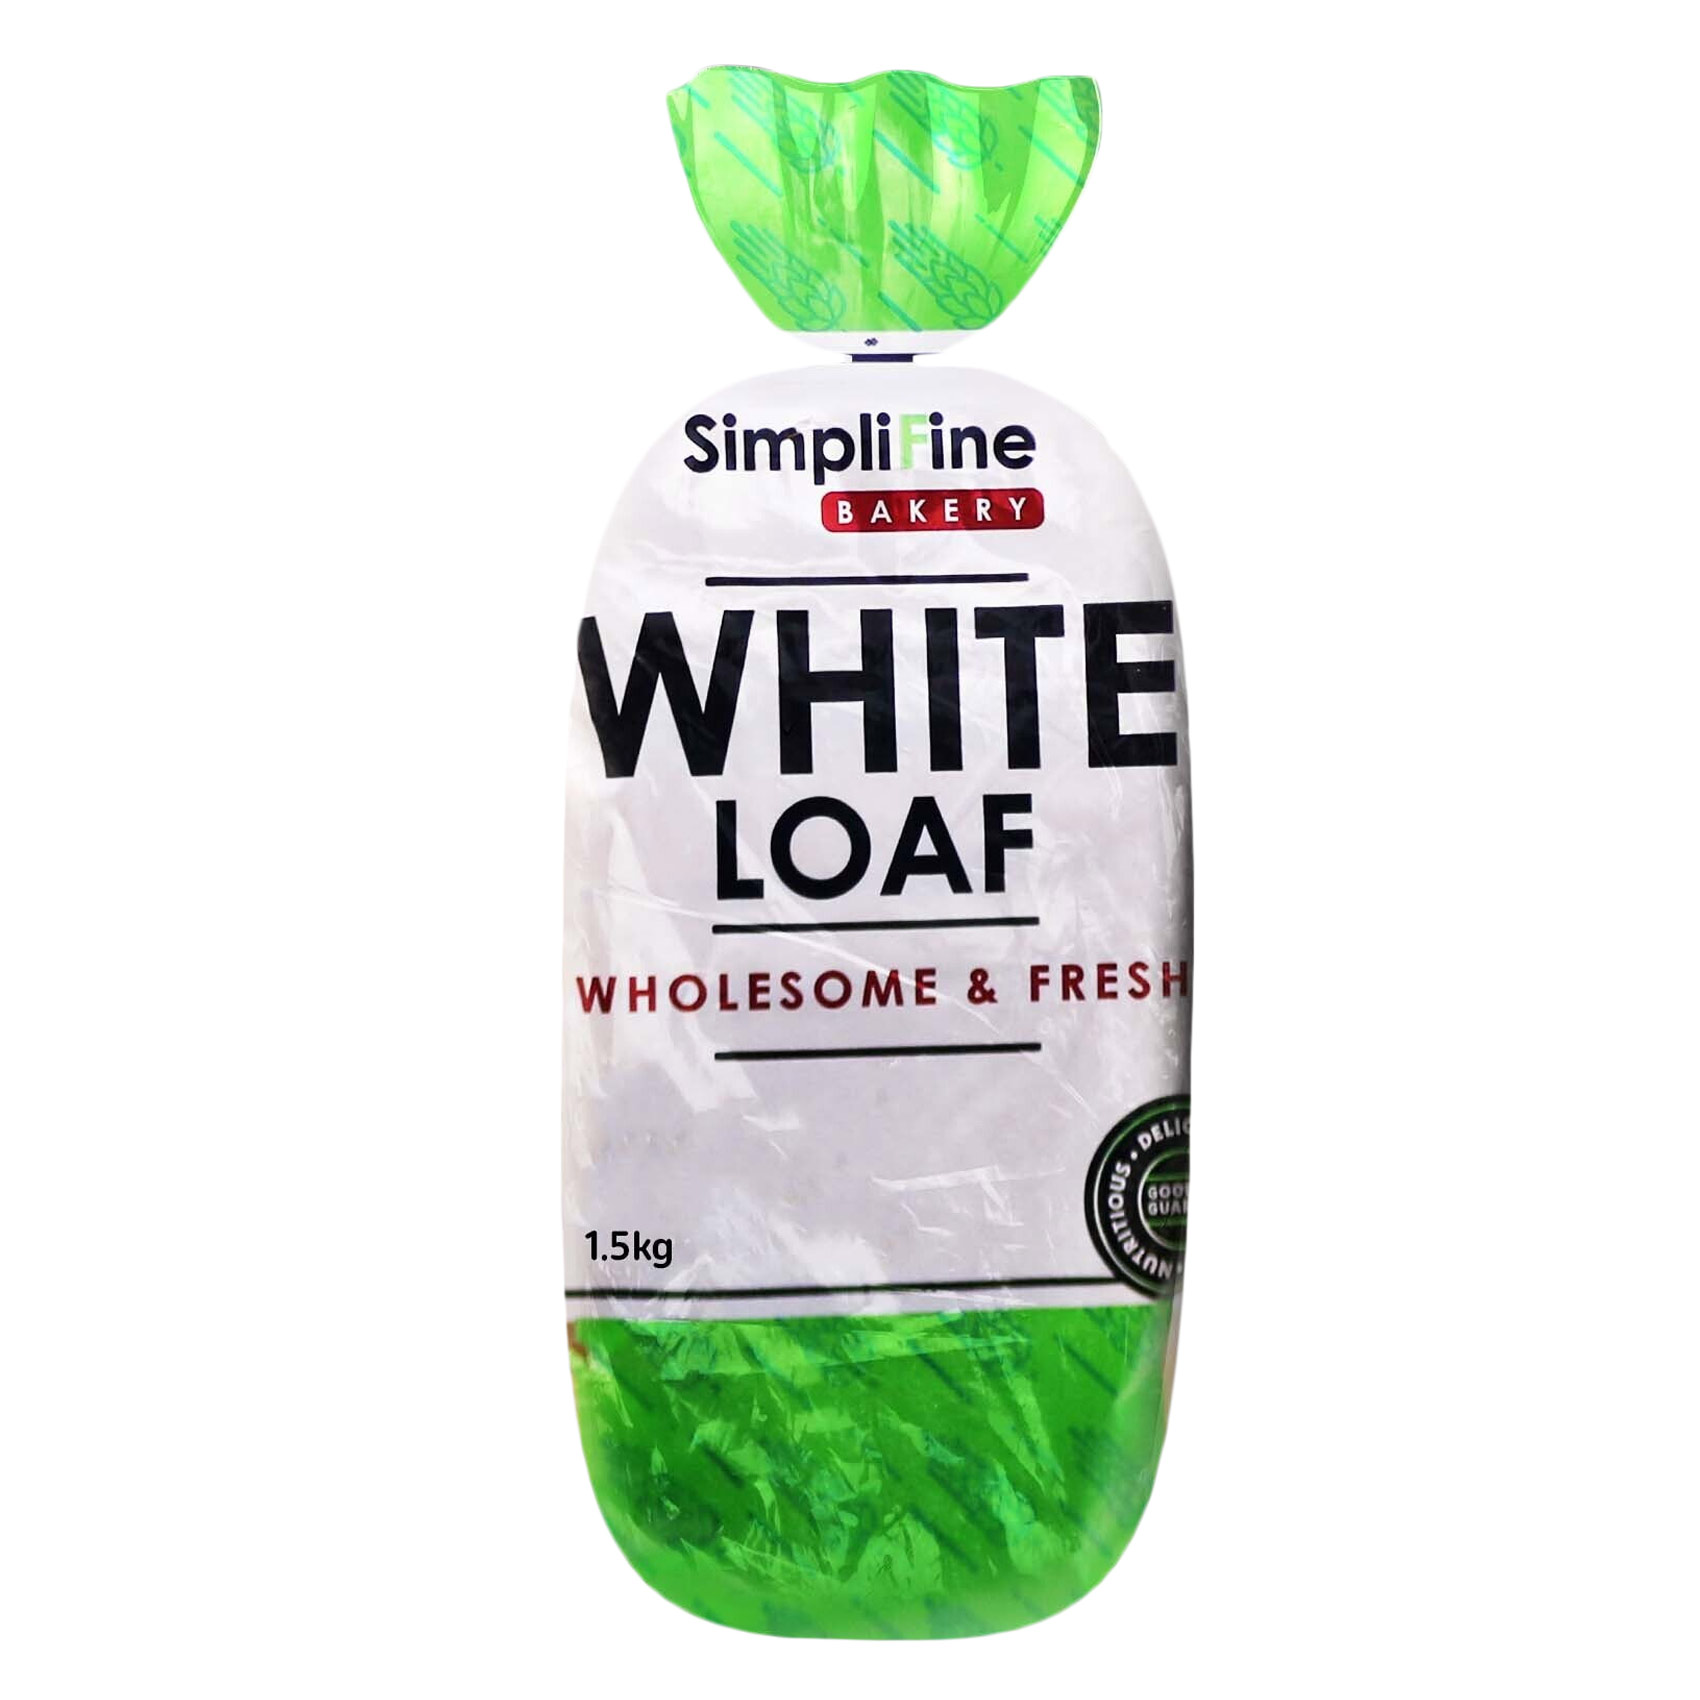 Simplifine Bakery White Loaf 1.5Kg